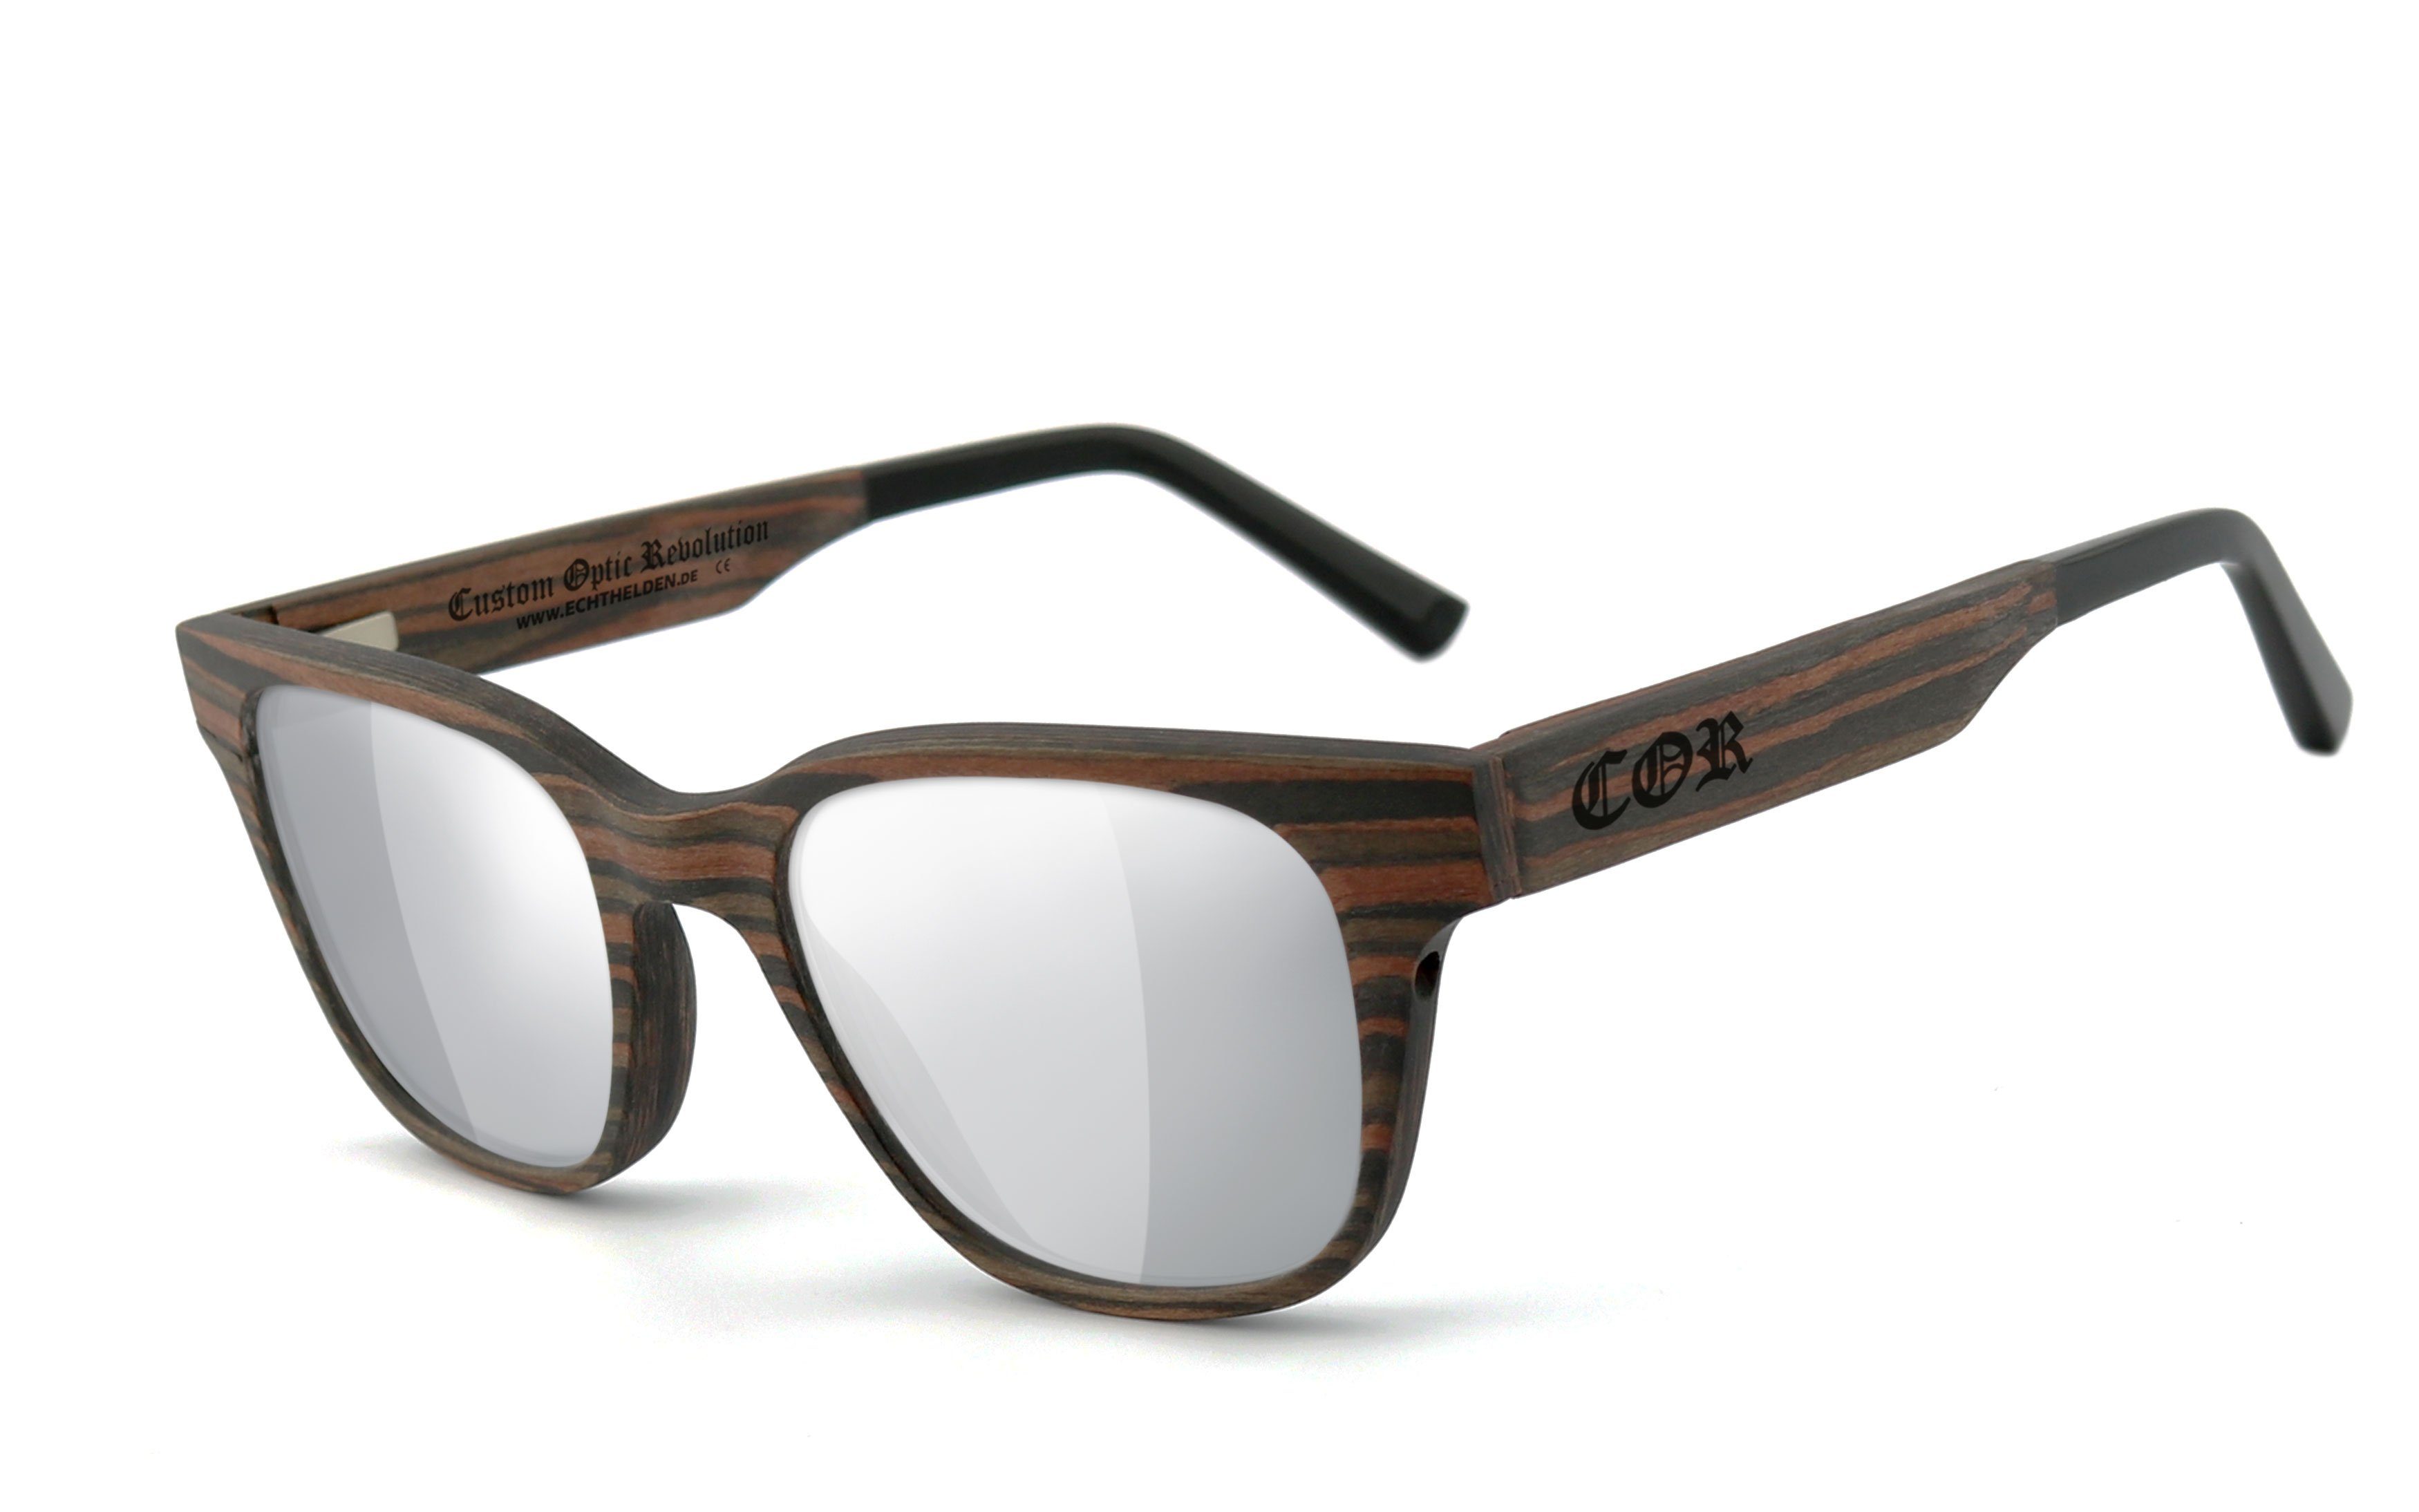 COR Sonnenbrille 012 aus Holz mit HLT® Qualitätsgläsern